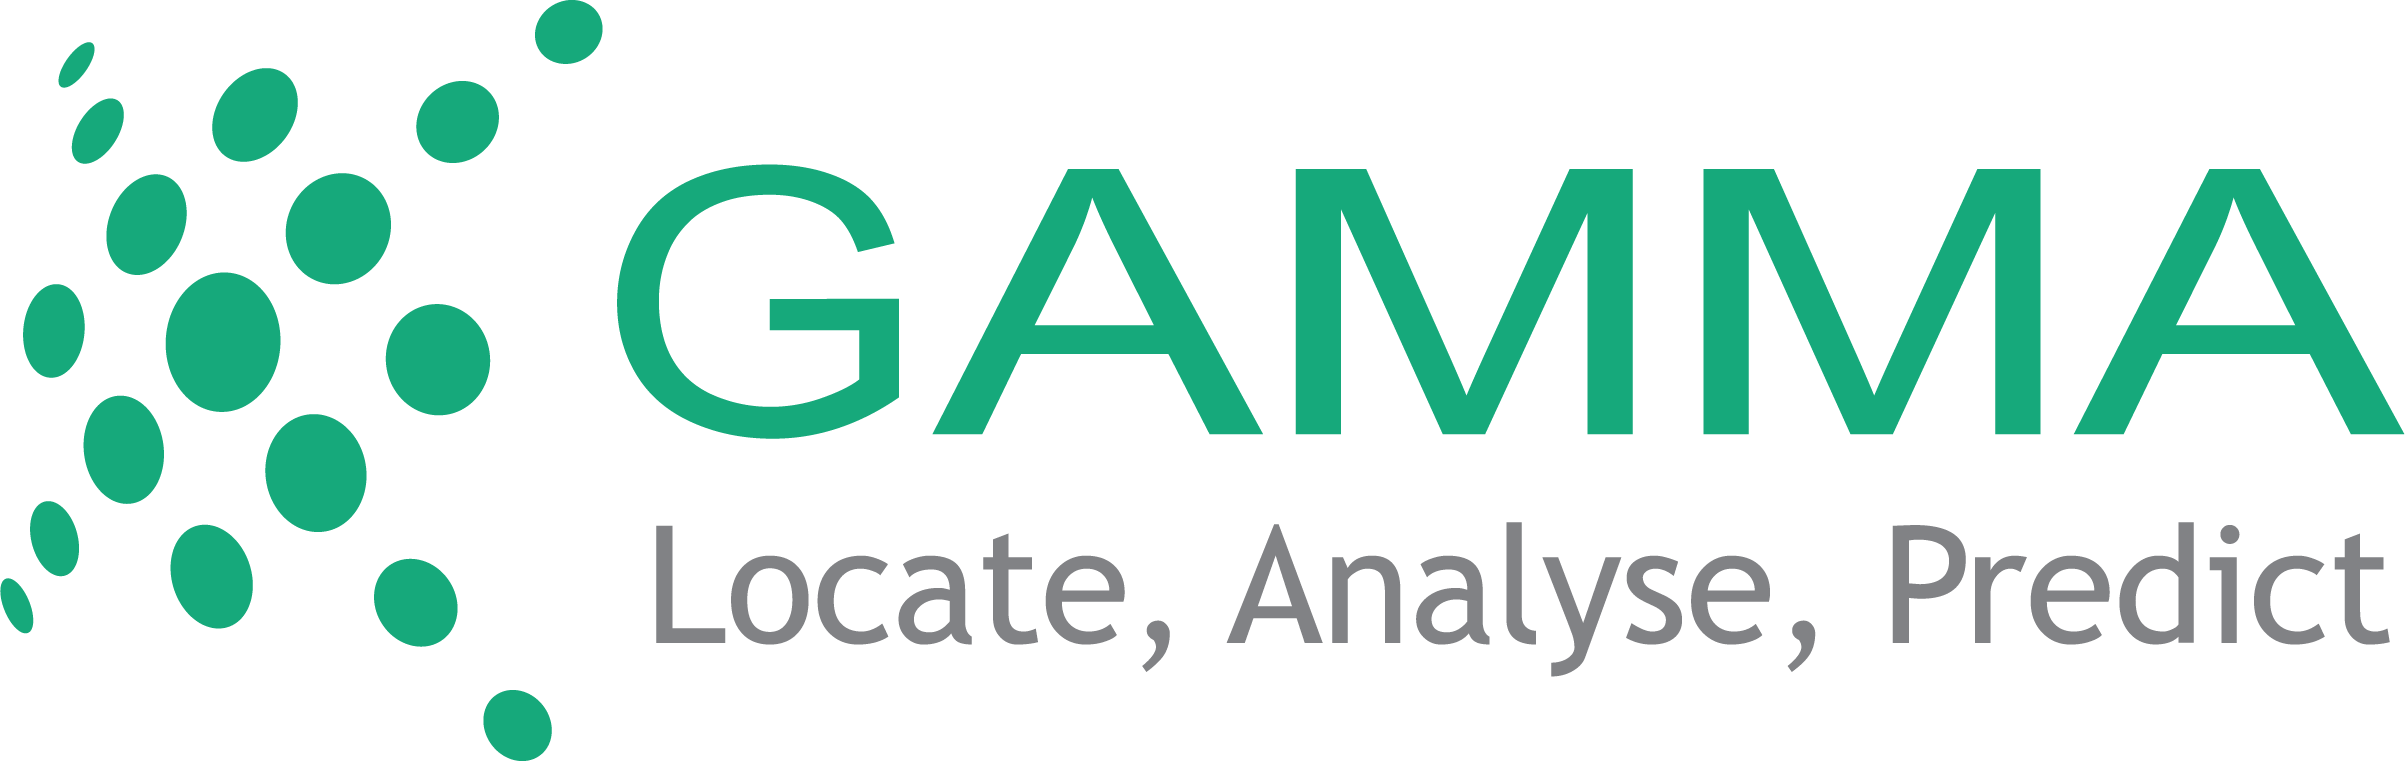 Gamma Line Logo - Gamma - European Insurance Forum 2018 European Insurance Forum 2018